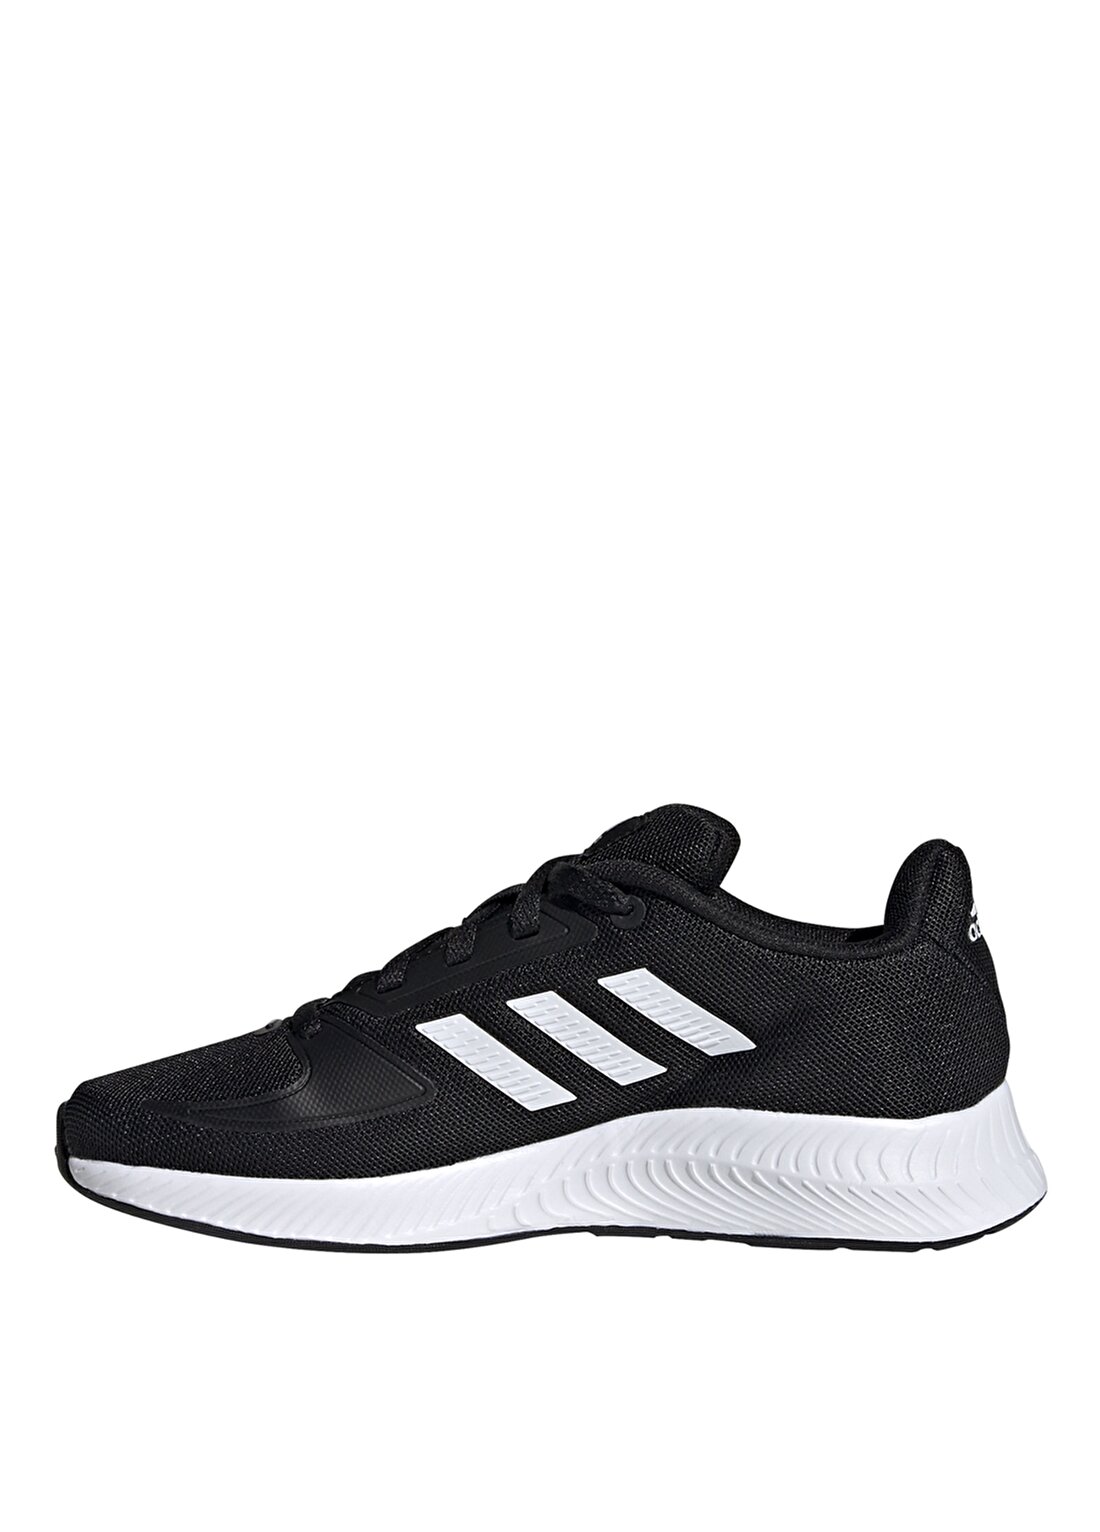 Adidas Fy9495 Runfalcon 2.0 K Siyaherkek Çocuk Yürüyüş Ayakkabısı